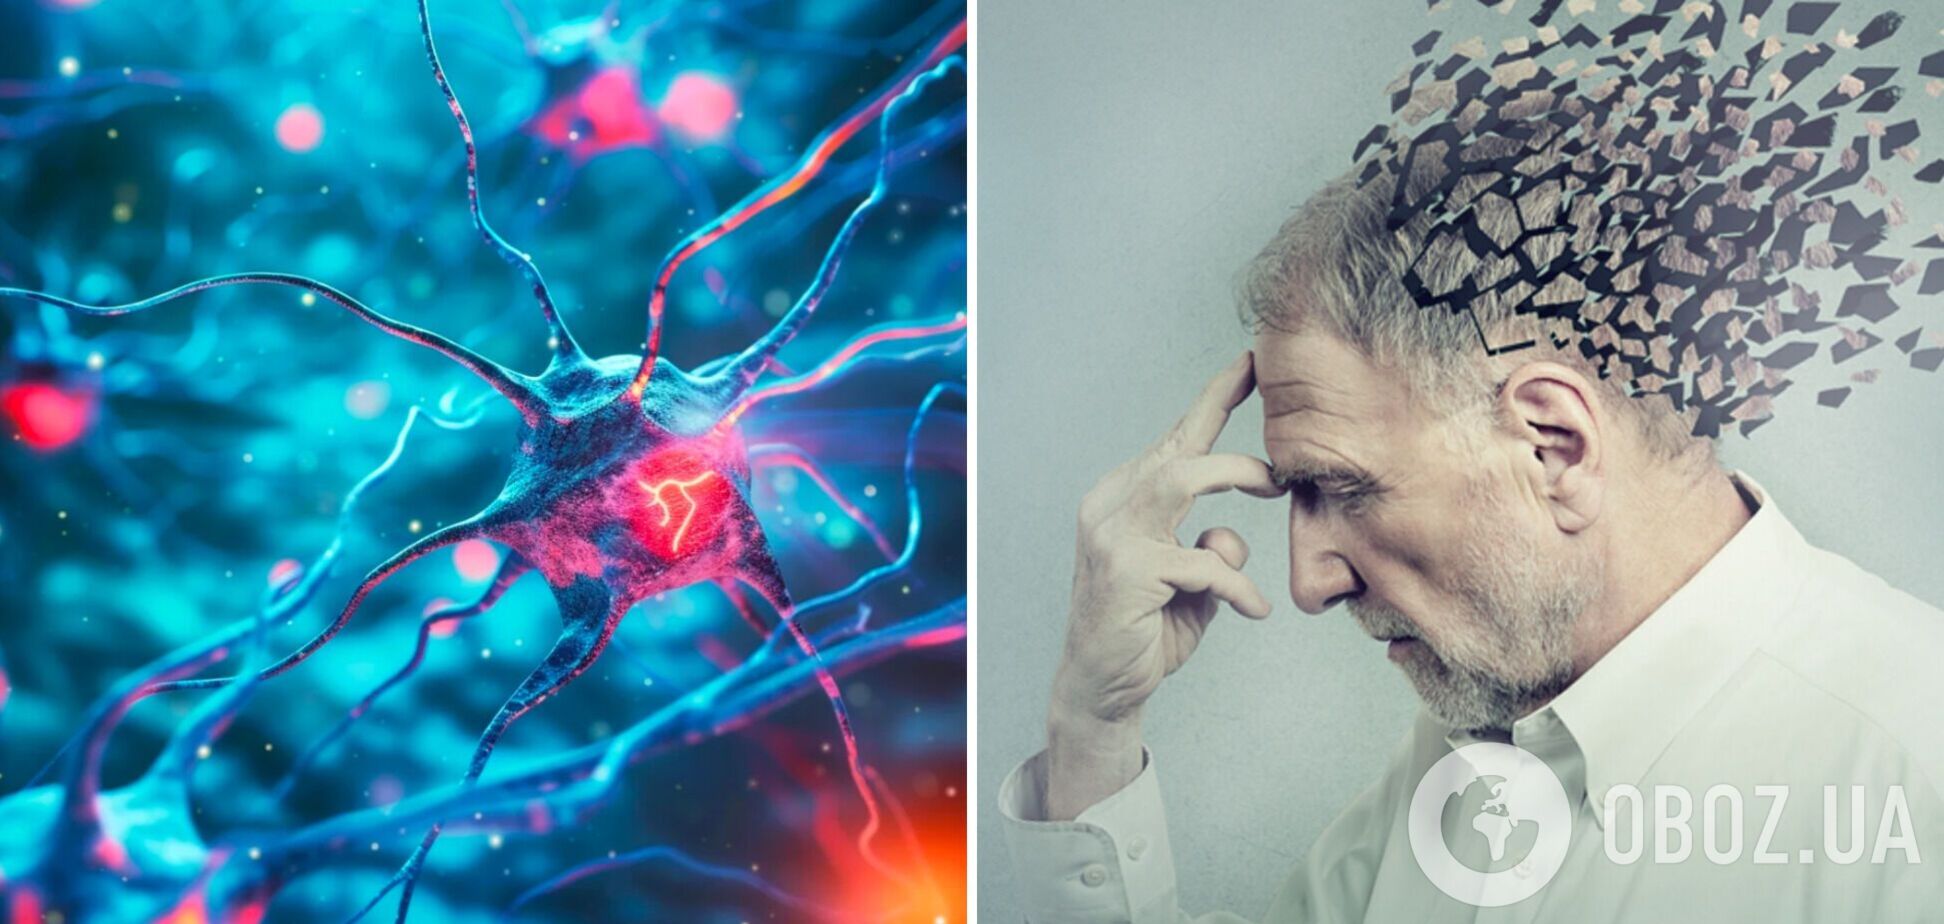 Болезнь Альцгеймера может передаваться от человека к человеку, но в редких случаях: ученые объяснили, о чем идет речь